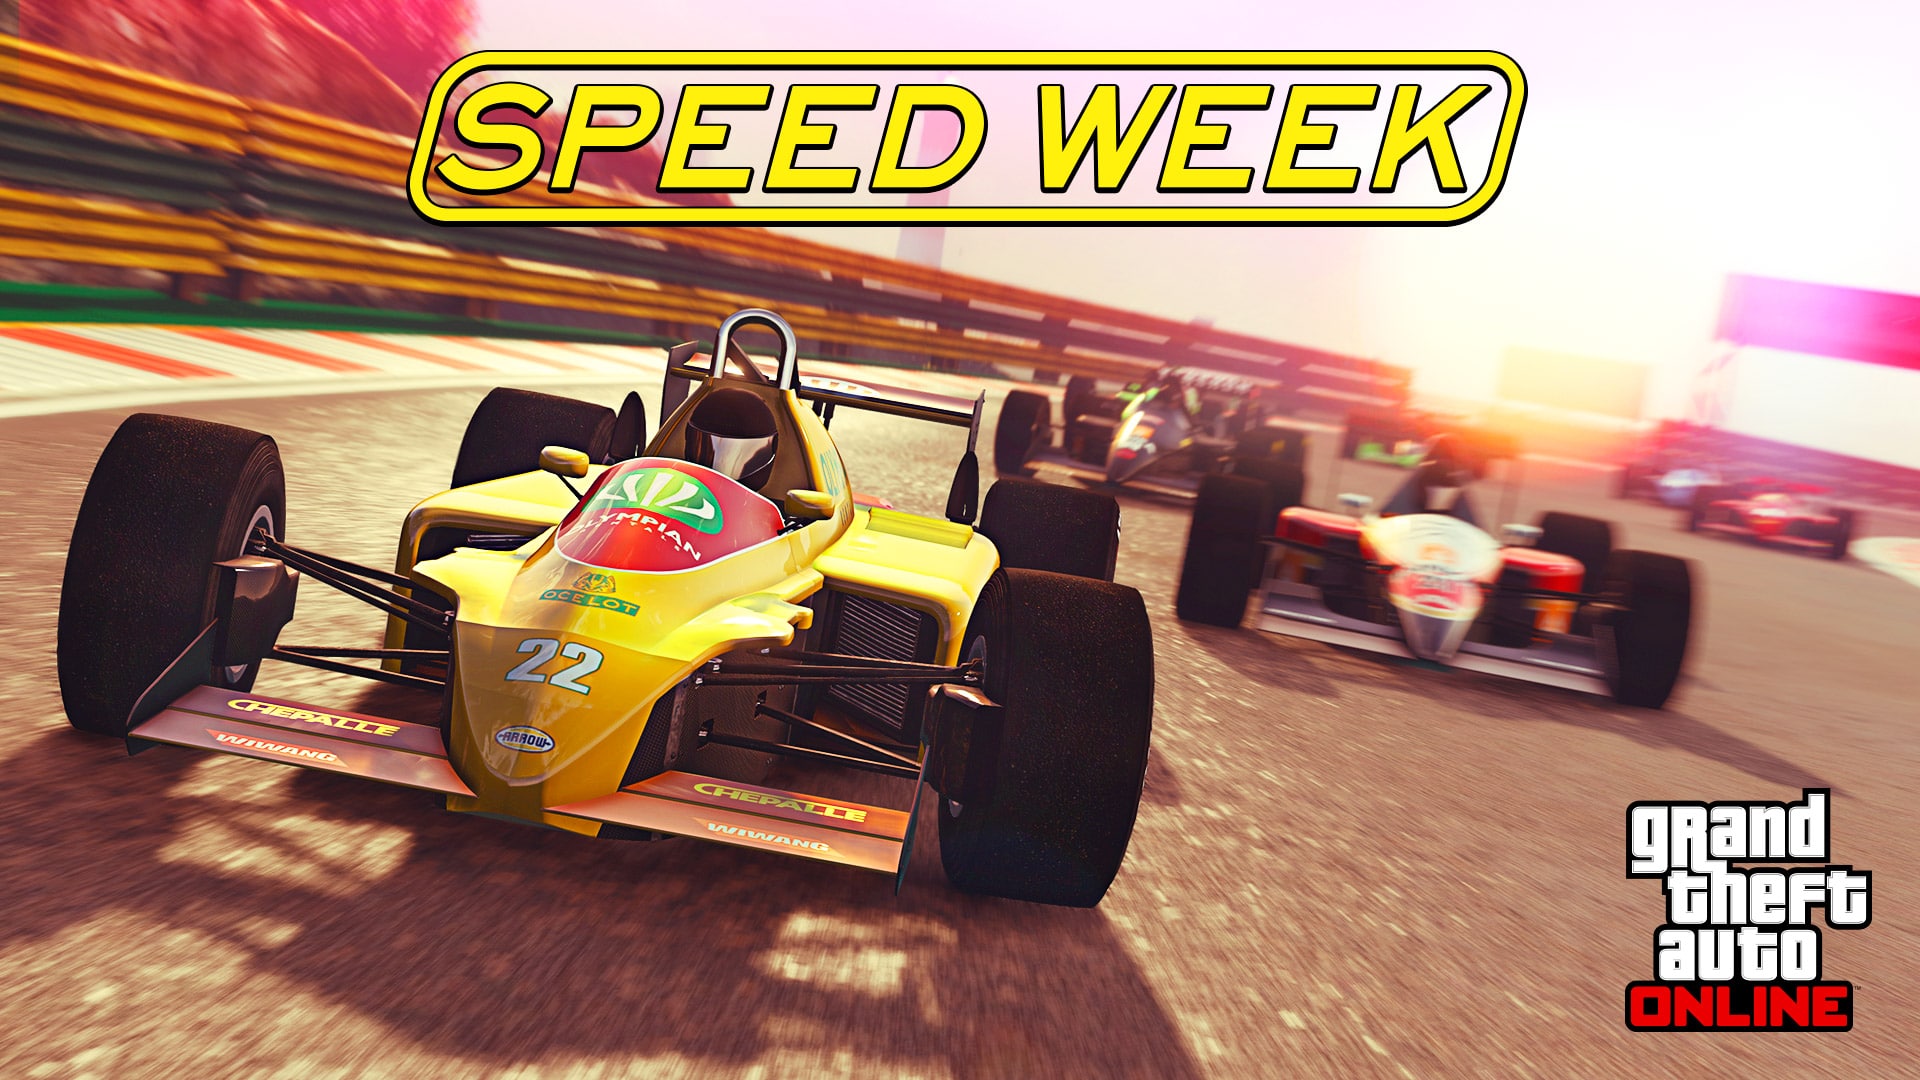 GTA speed week